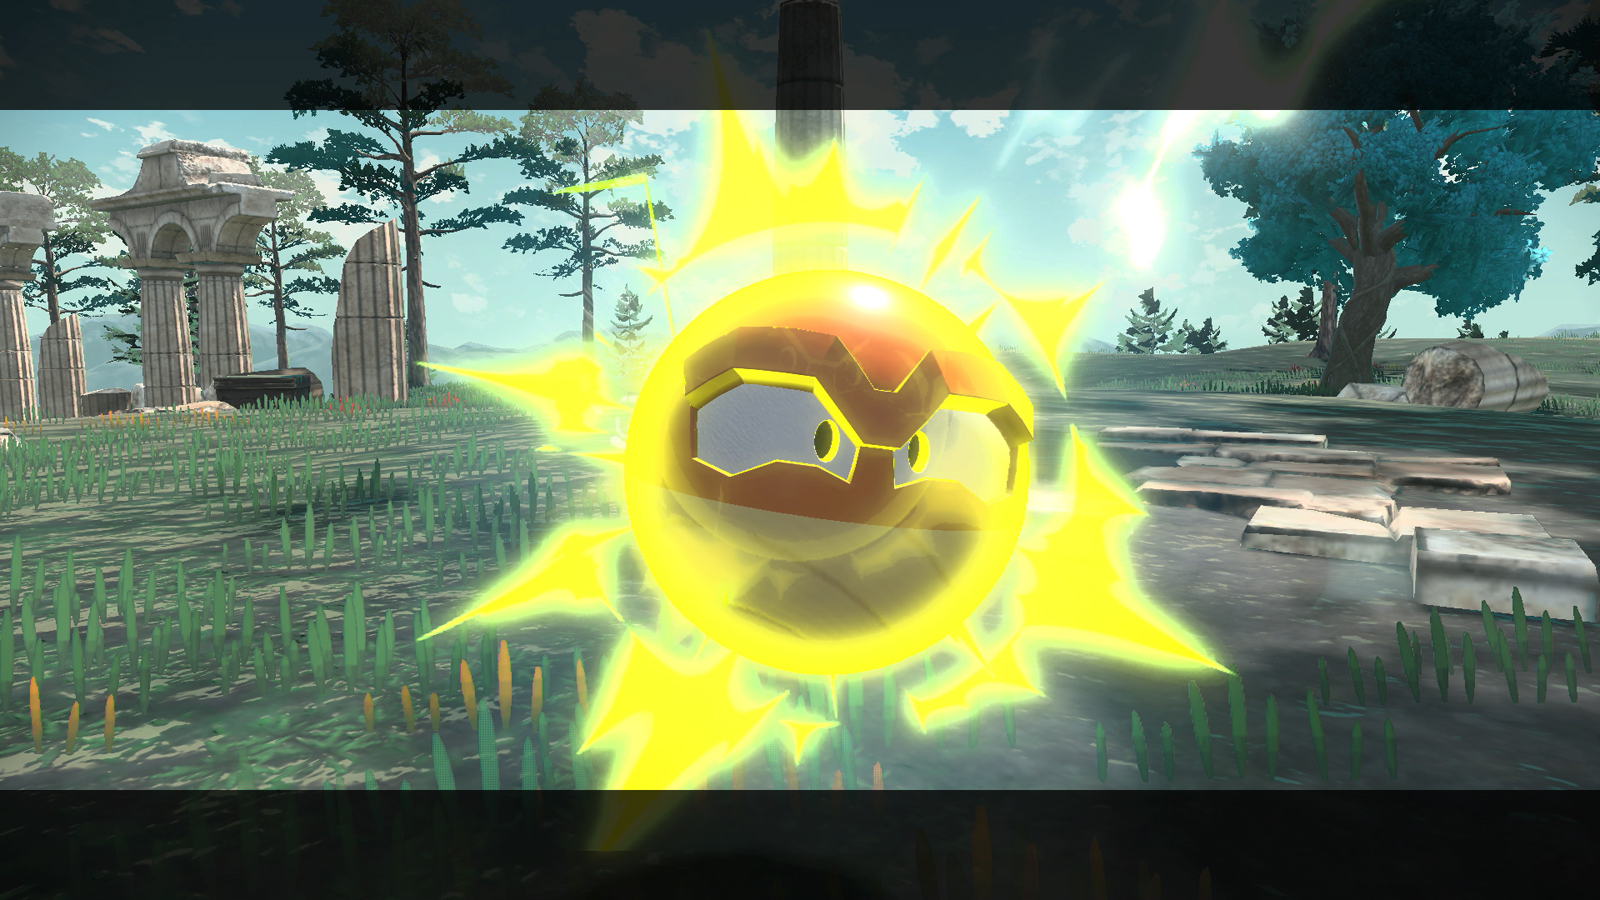 Jogada Excelente - Voltorb Brilhante (Shiny) está liberado no jogo. Apesar  da baixa quantidade de spawn por conta dos eventos temáticos com regiões do  mundo Pokémon, existem 2 Pesquisas de Campo que